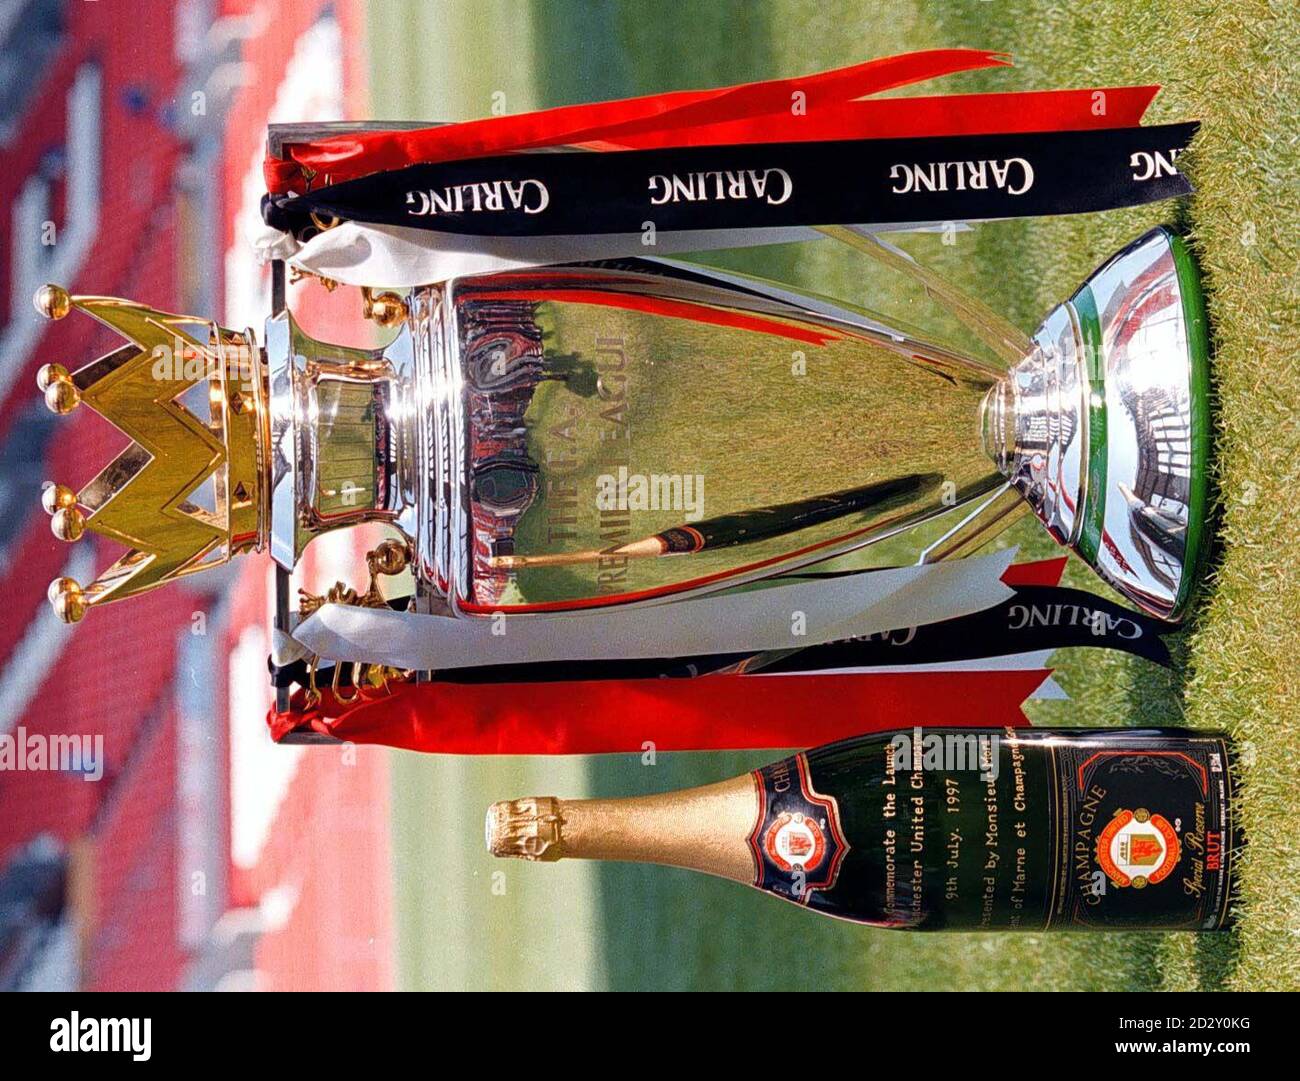 Il Premiership Title Trophy e il Manchester United hanno in mostra per i media la propria Champagne durante una fotocall a Old Trafford oggi (Mercoledì). Foto di Dave Kendall/PA Foto Stock